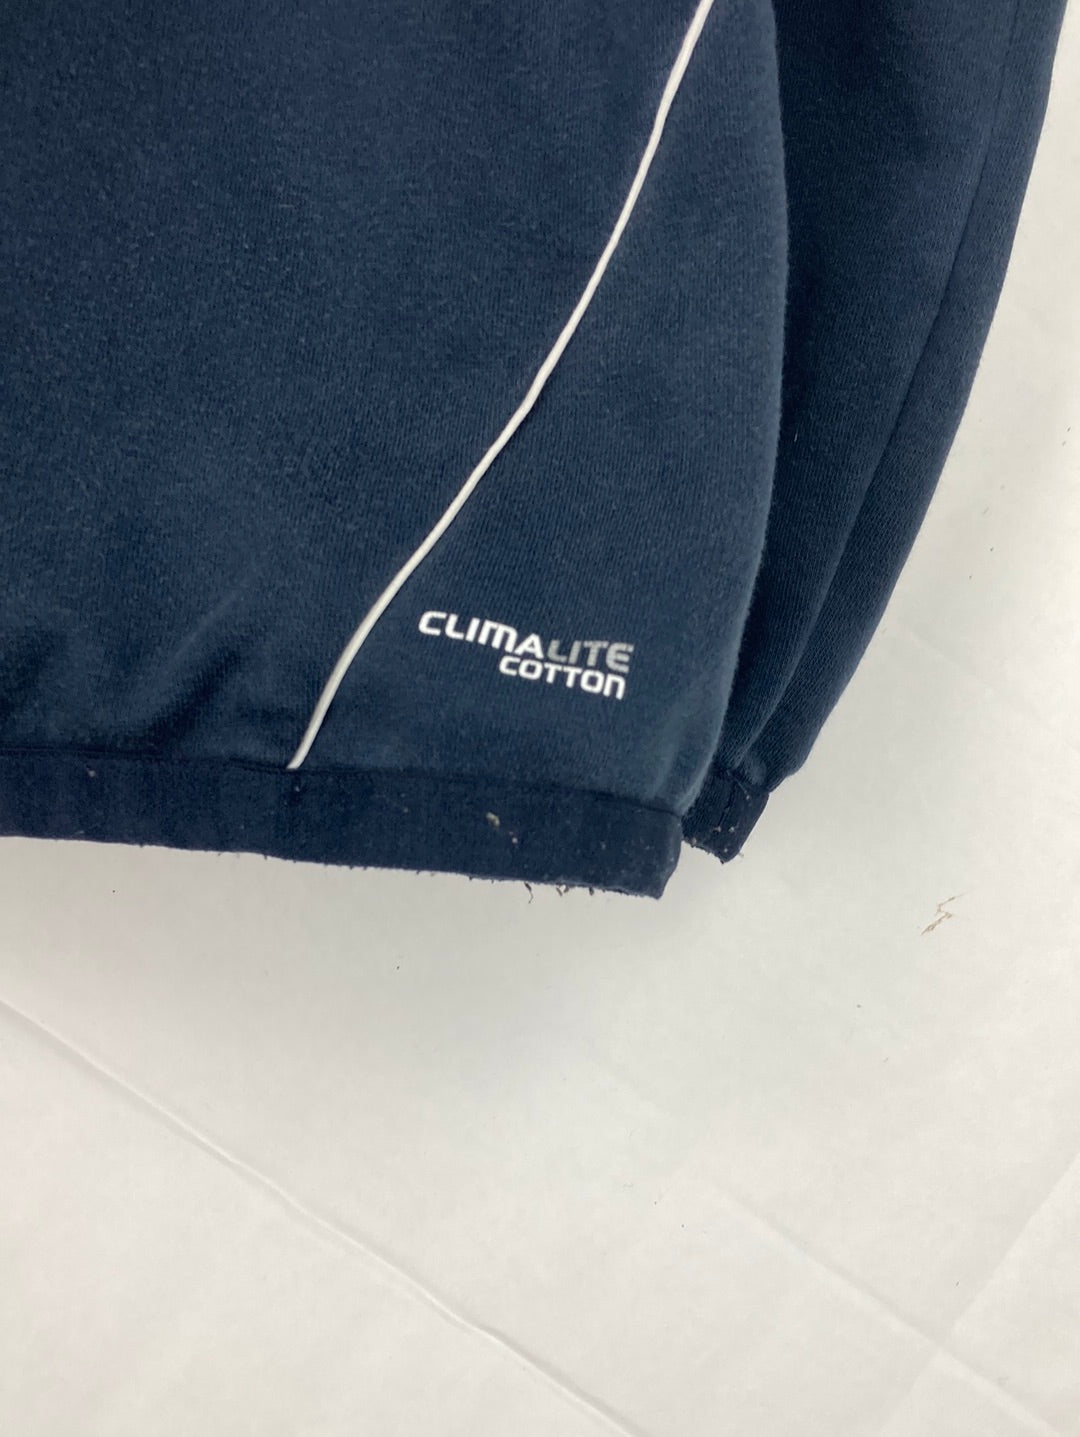 Adidas training jacket (XL)